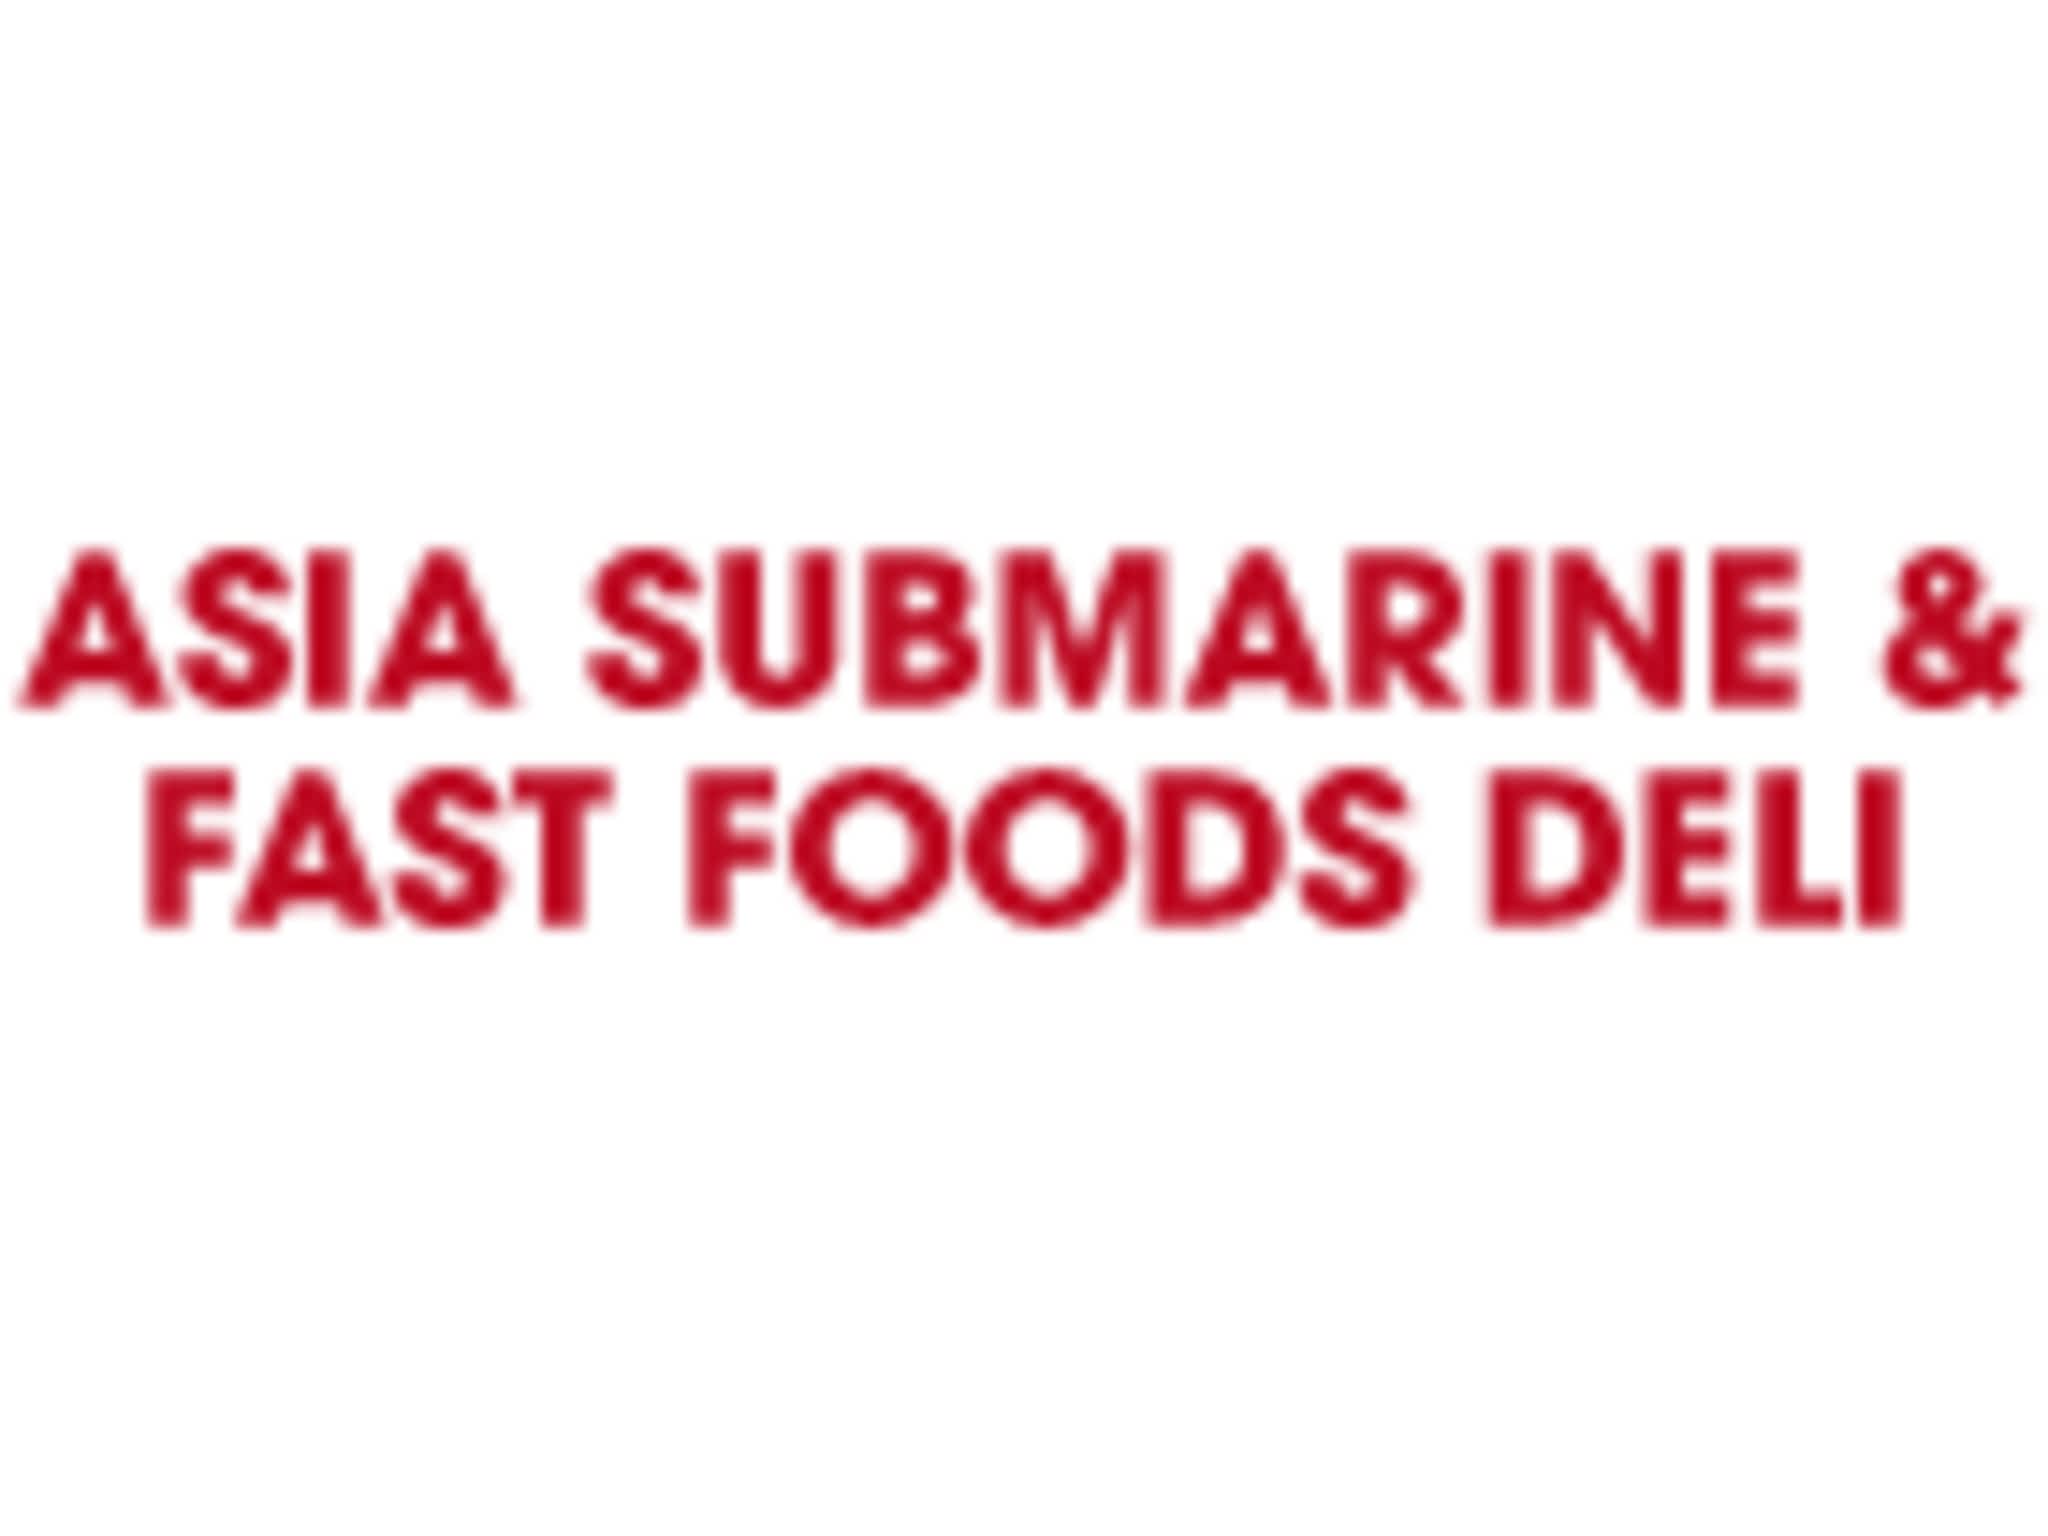 photo Asia Submarine Fast Foods Deli